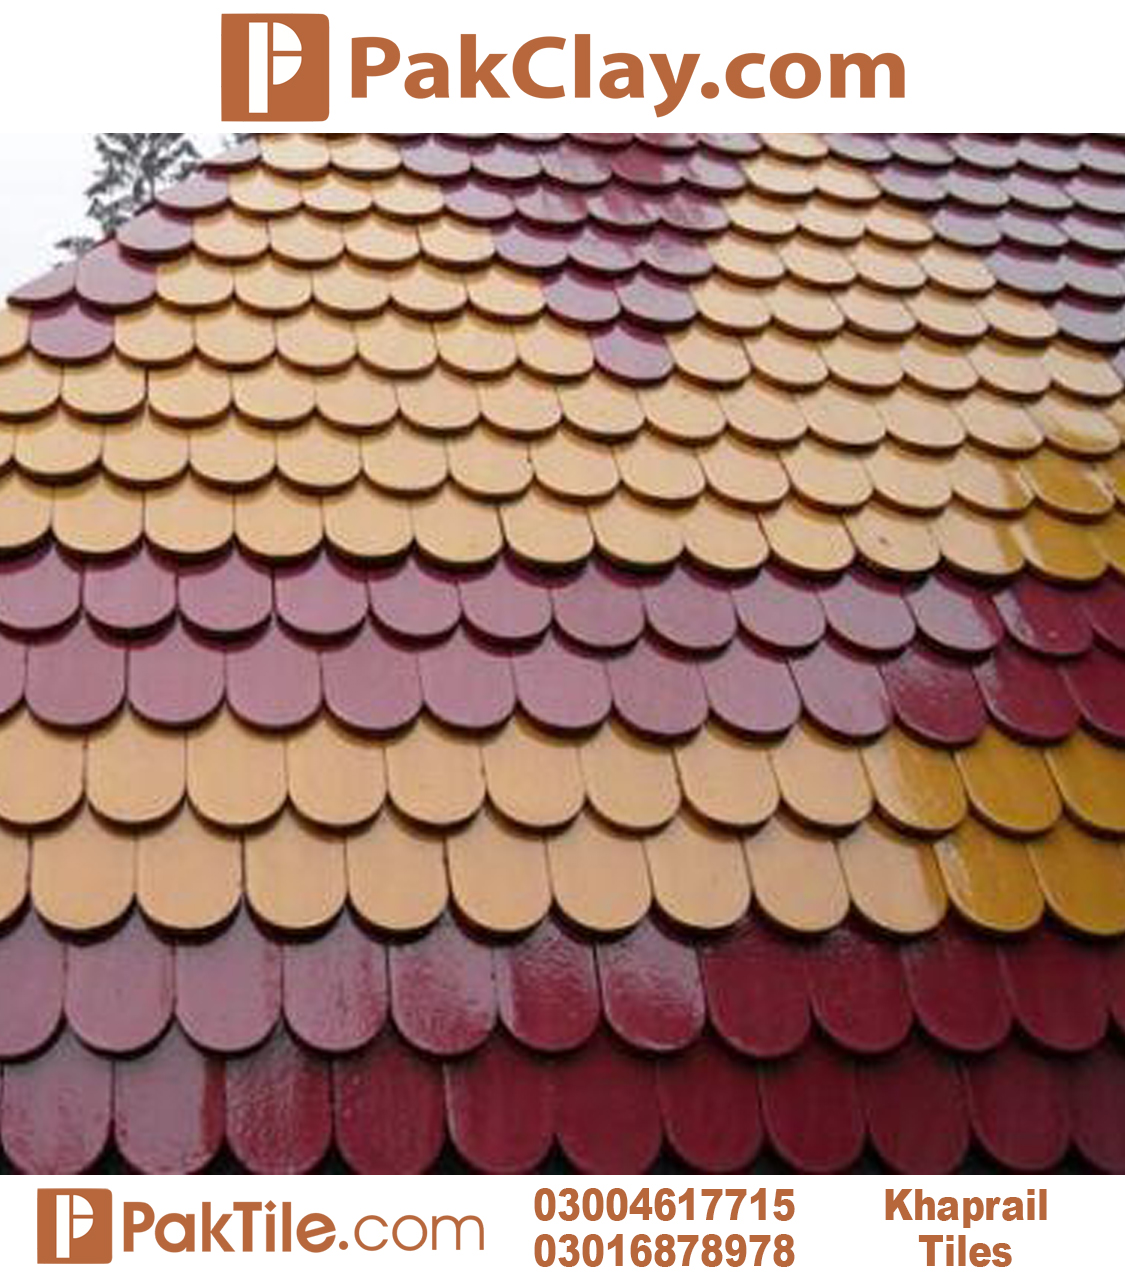 Color khaprail tiles suppliers Pakistan